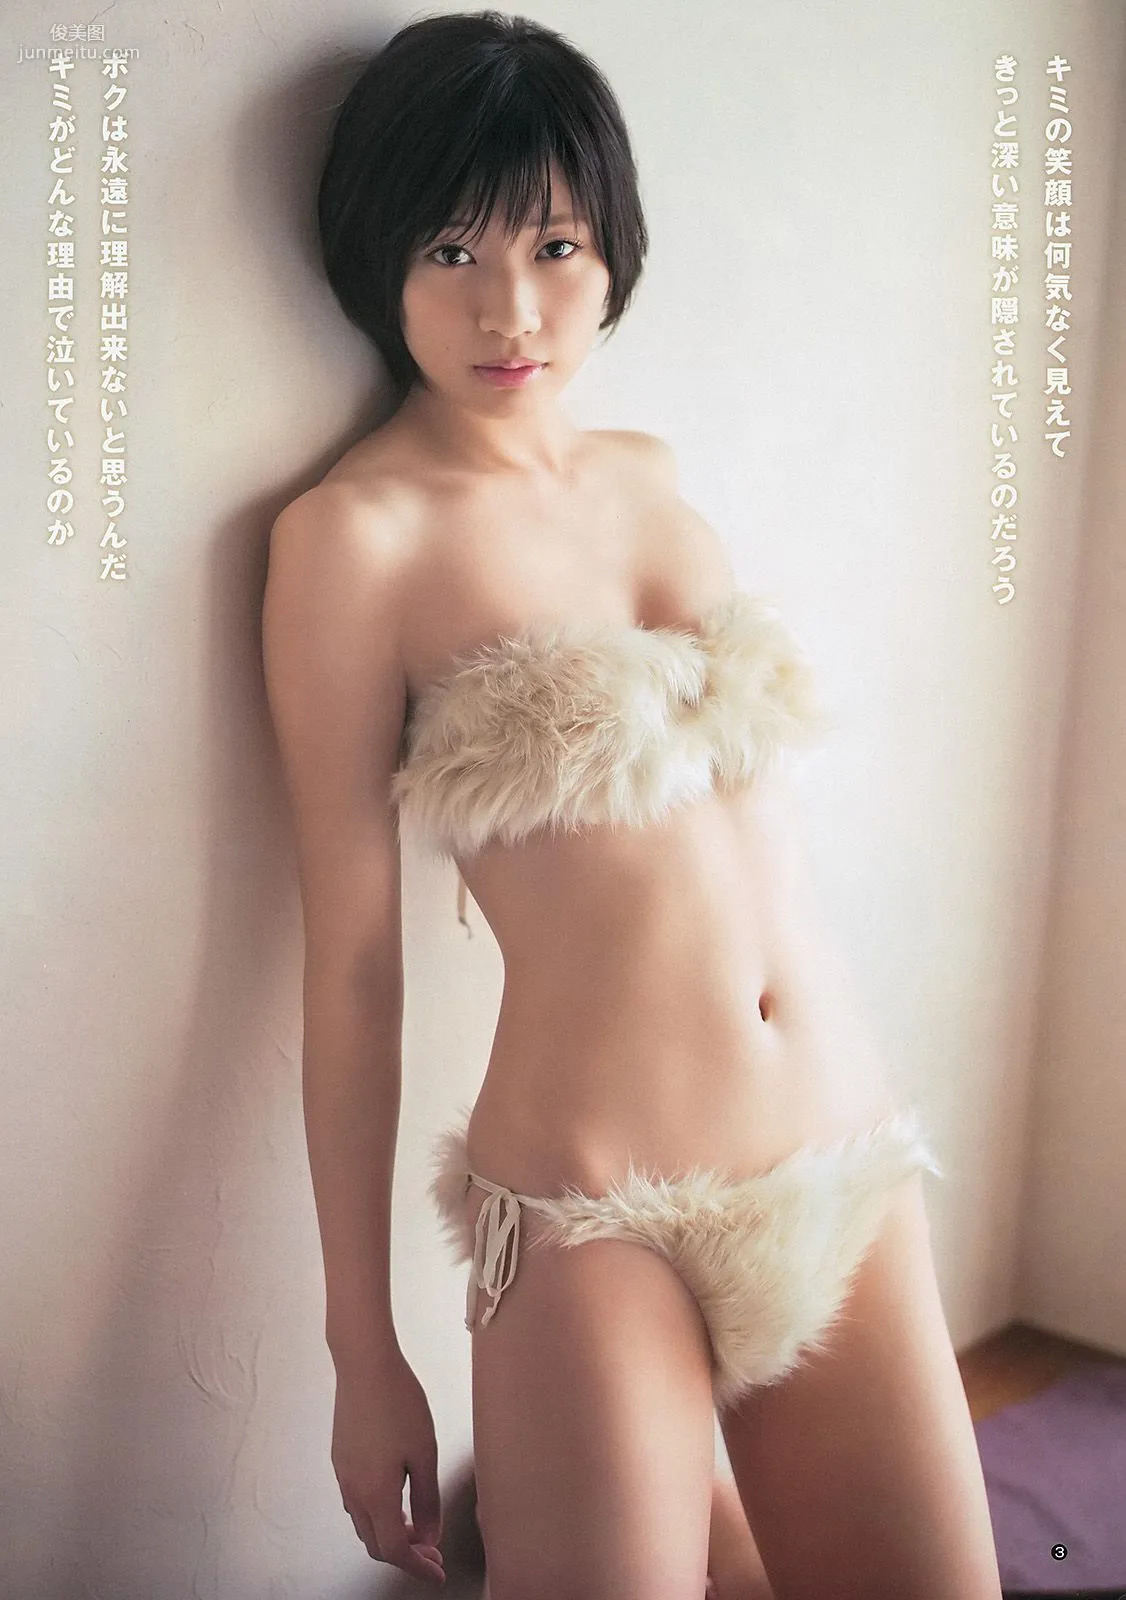 相楽樹 糸山千恵 優希美青 [Weekly Young Jump] 2013年No.50 写真杂志4